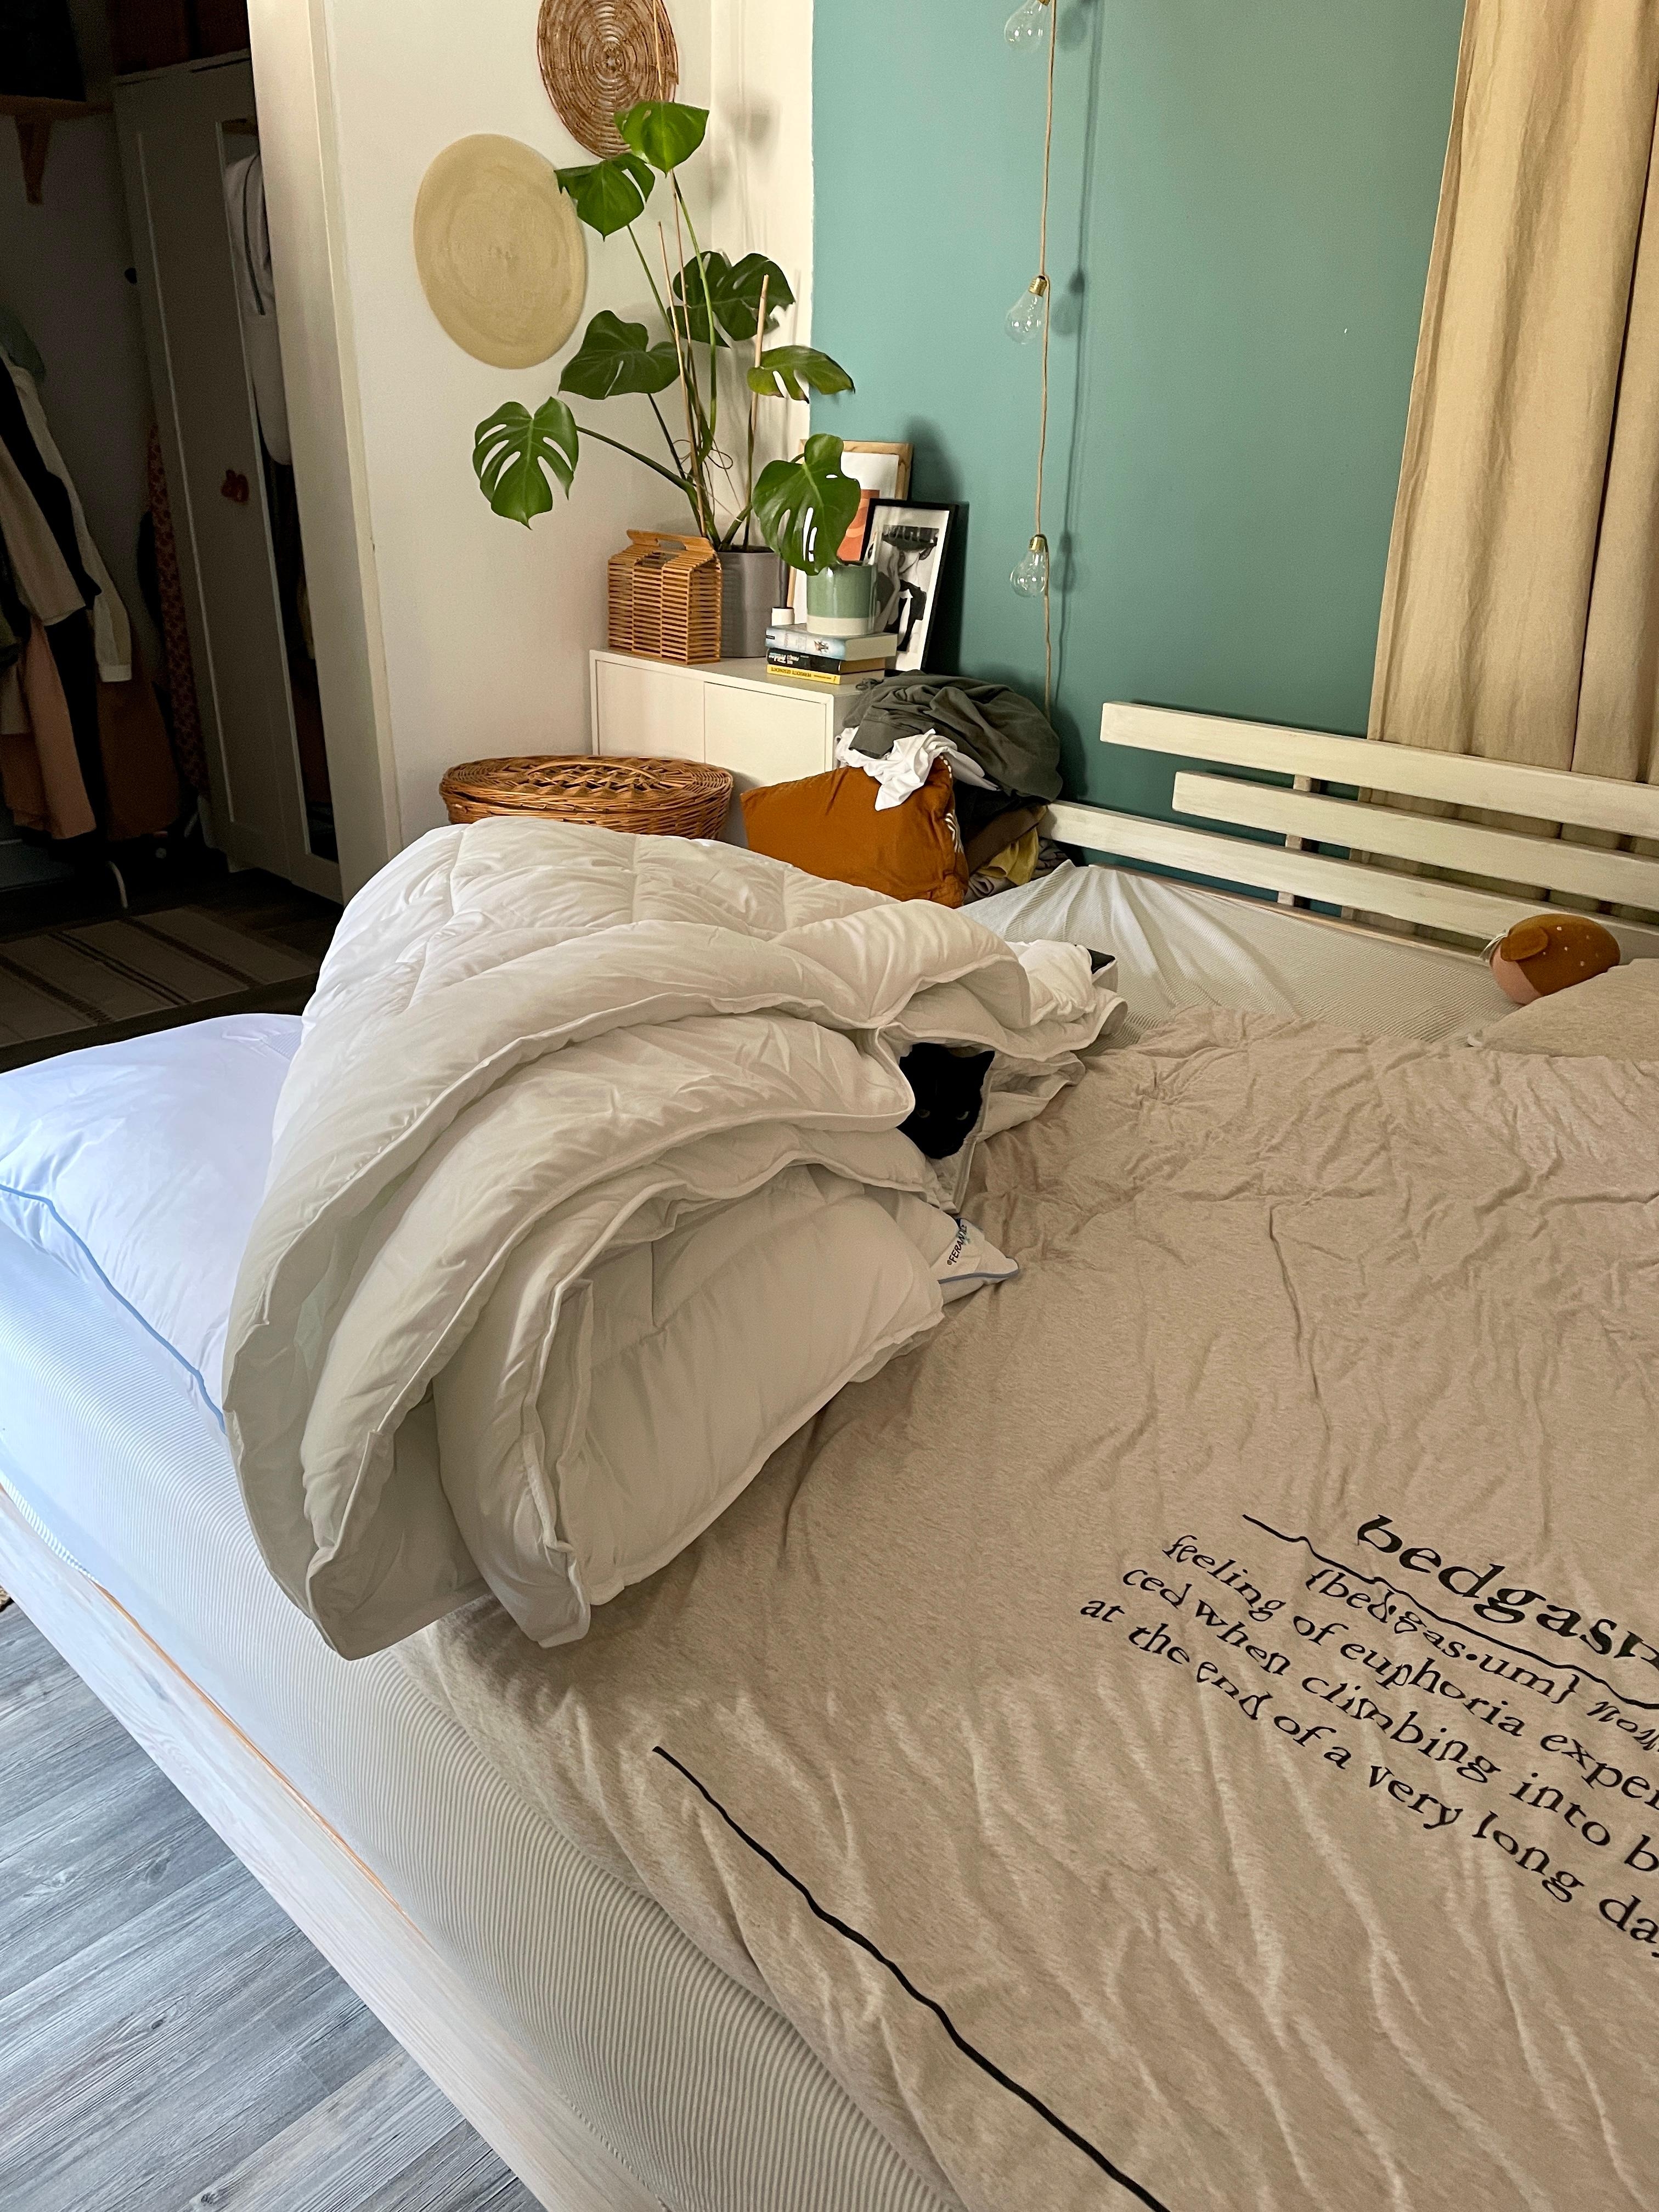 Bester Start ins Wochenende- im frisch bezogenen Bett #findalan#katzenliebe#bedroom Kater 